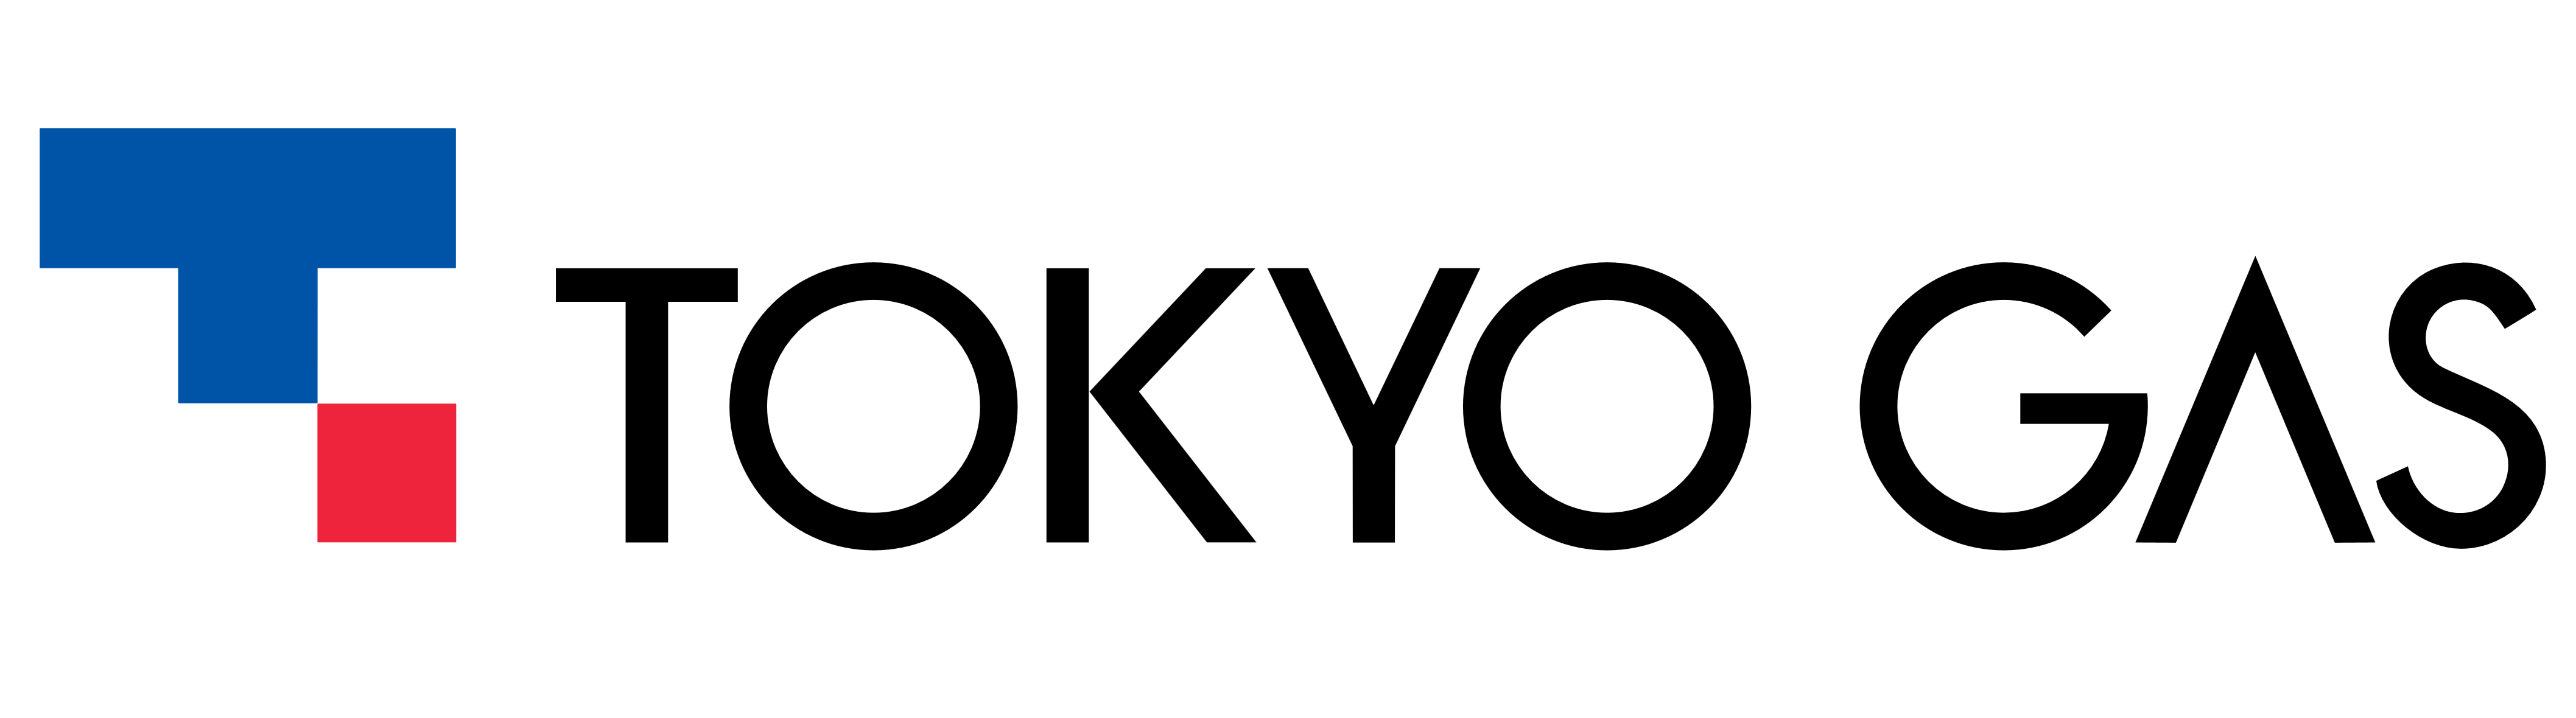 Tokyo Gas logo, logotype